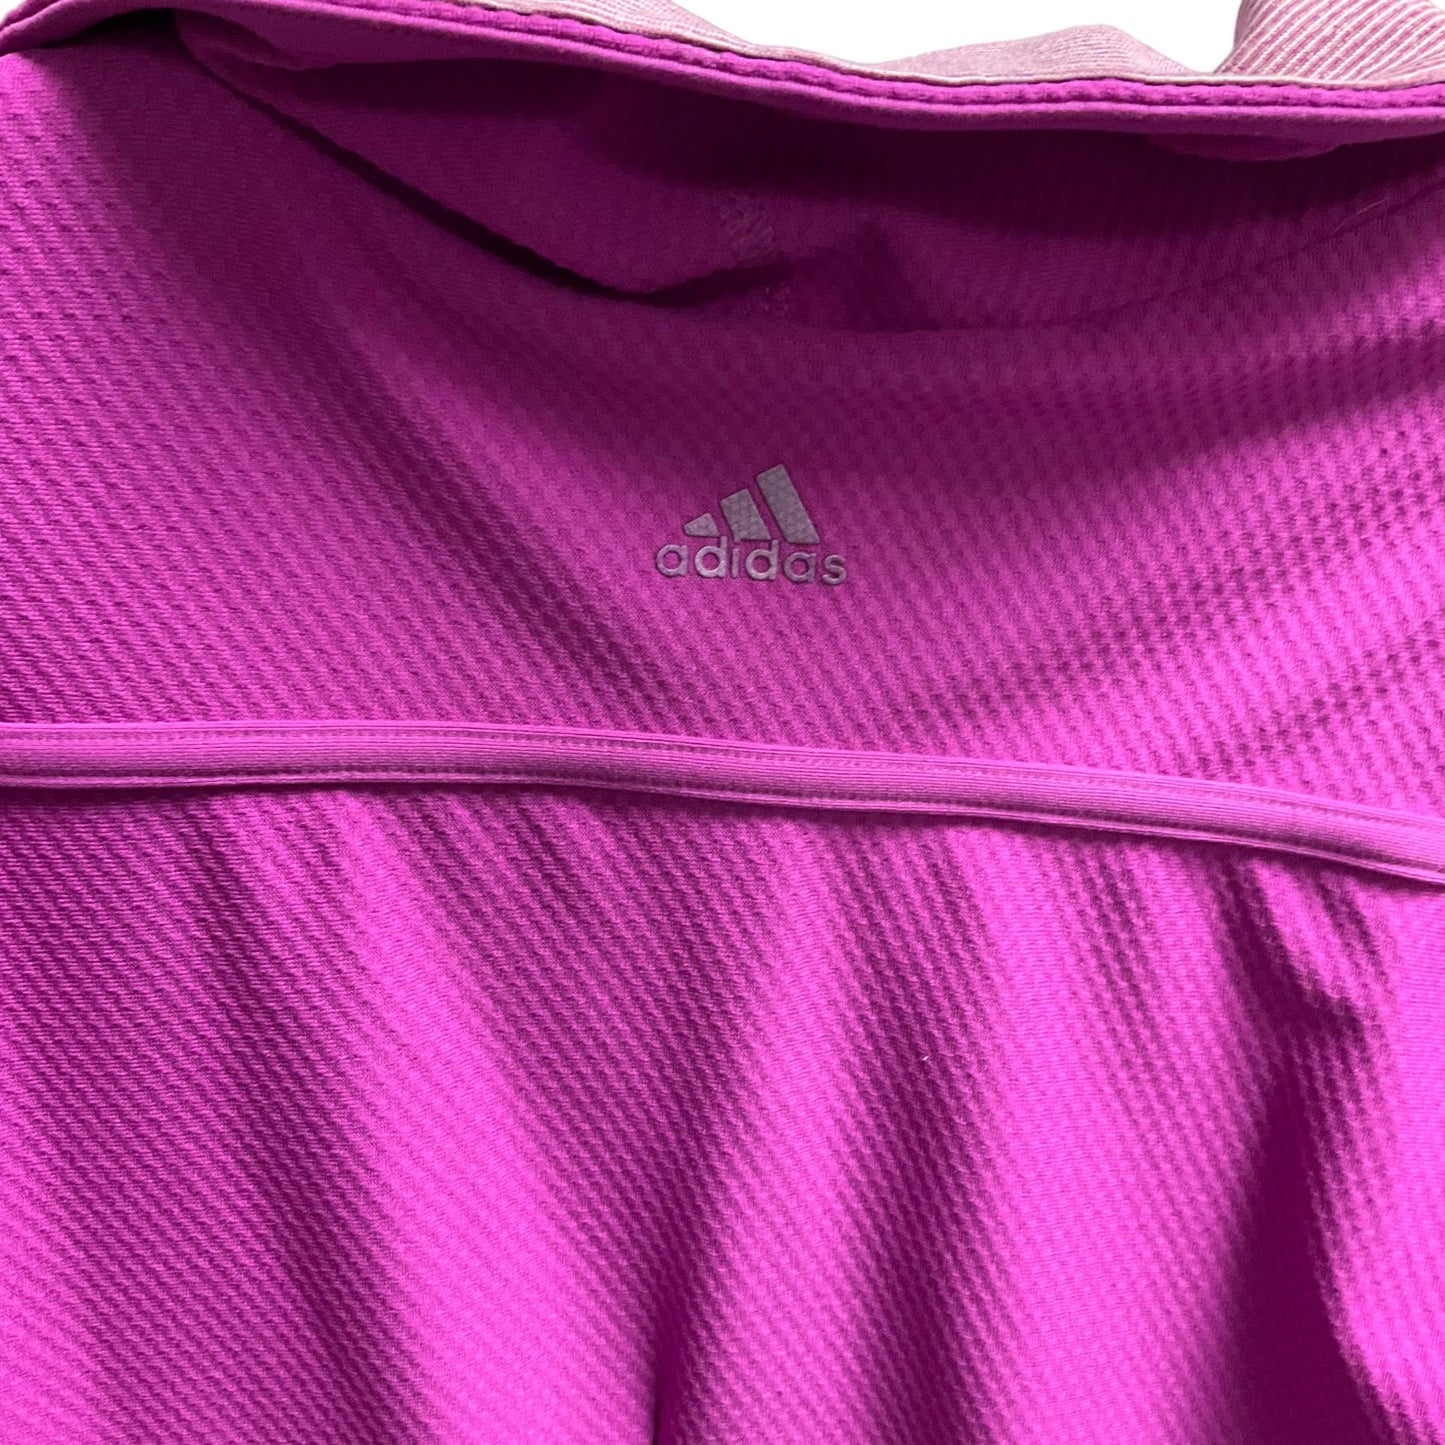 Purple Athletic Jacket Adidas, Size S